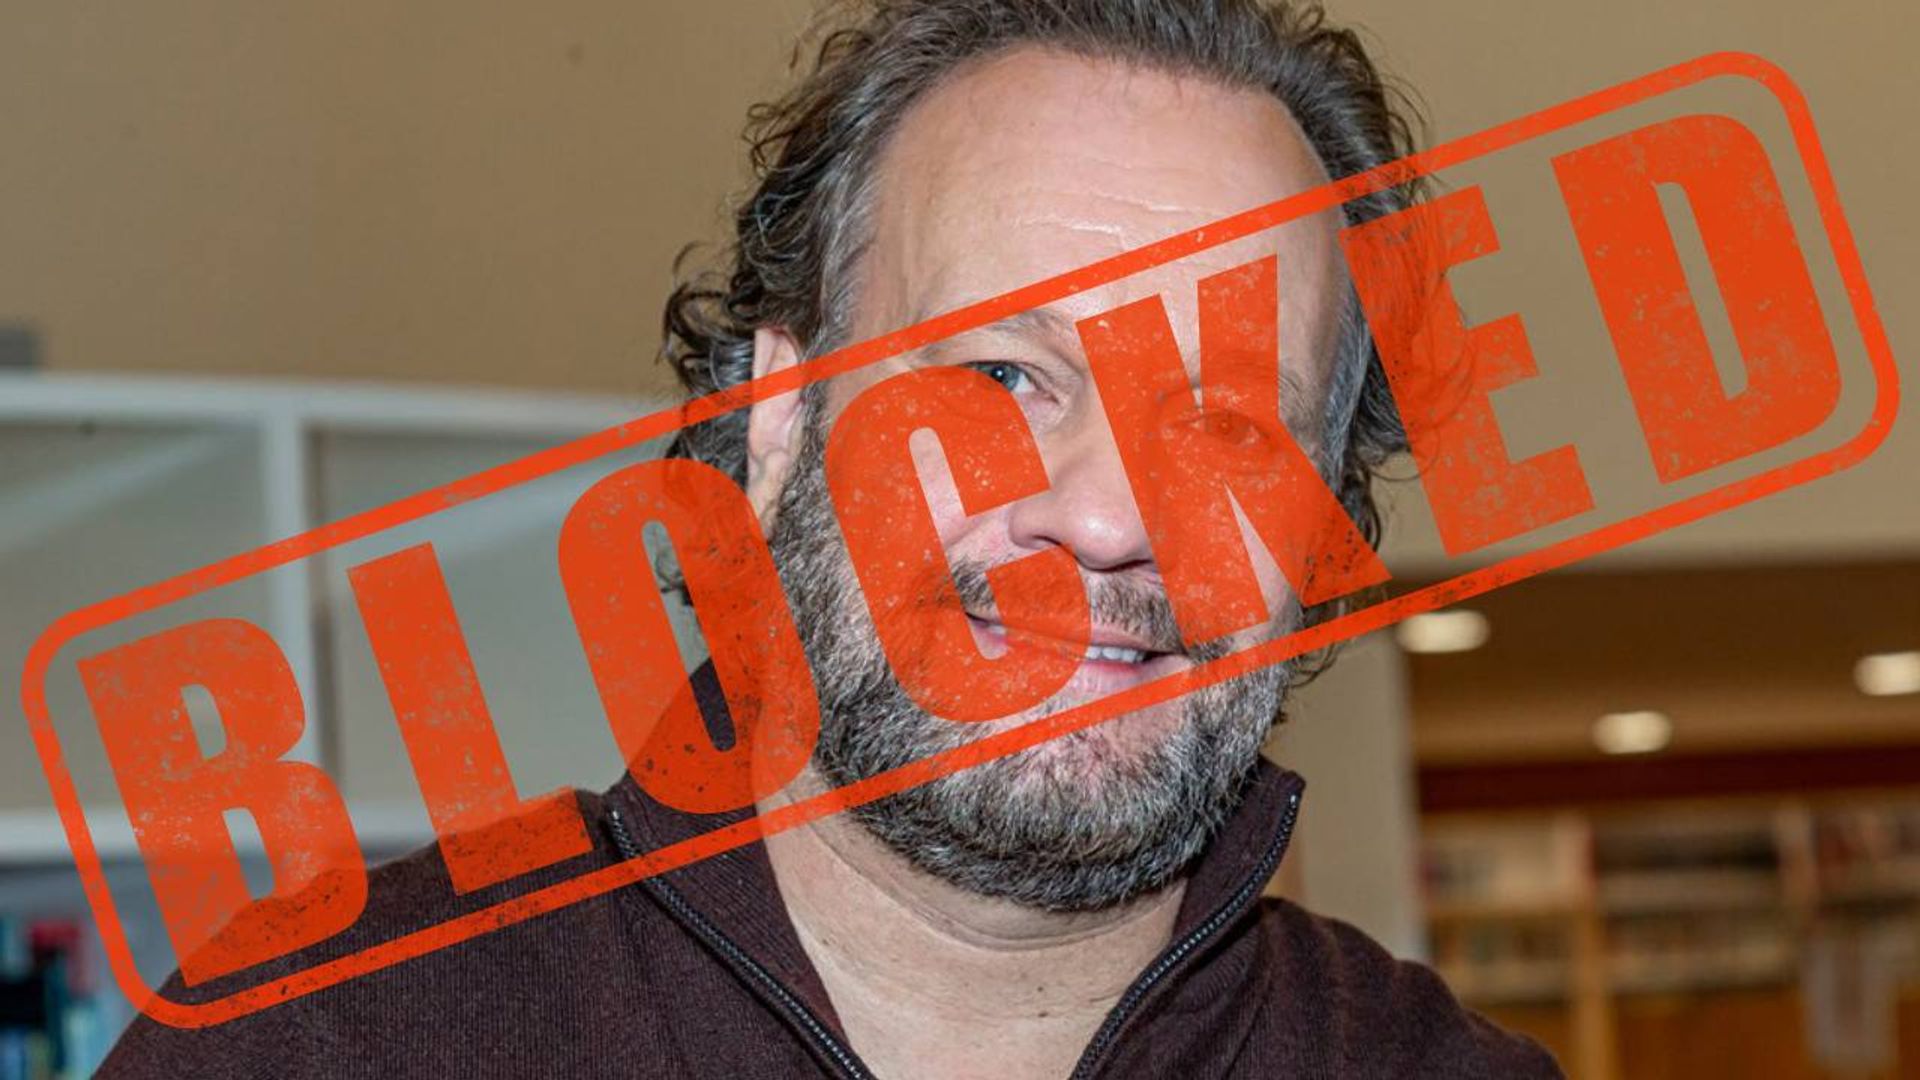 Carlo Boszhard blokkeert iedereen die naar ‘hamster in anus’ vraagt